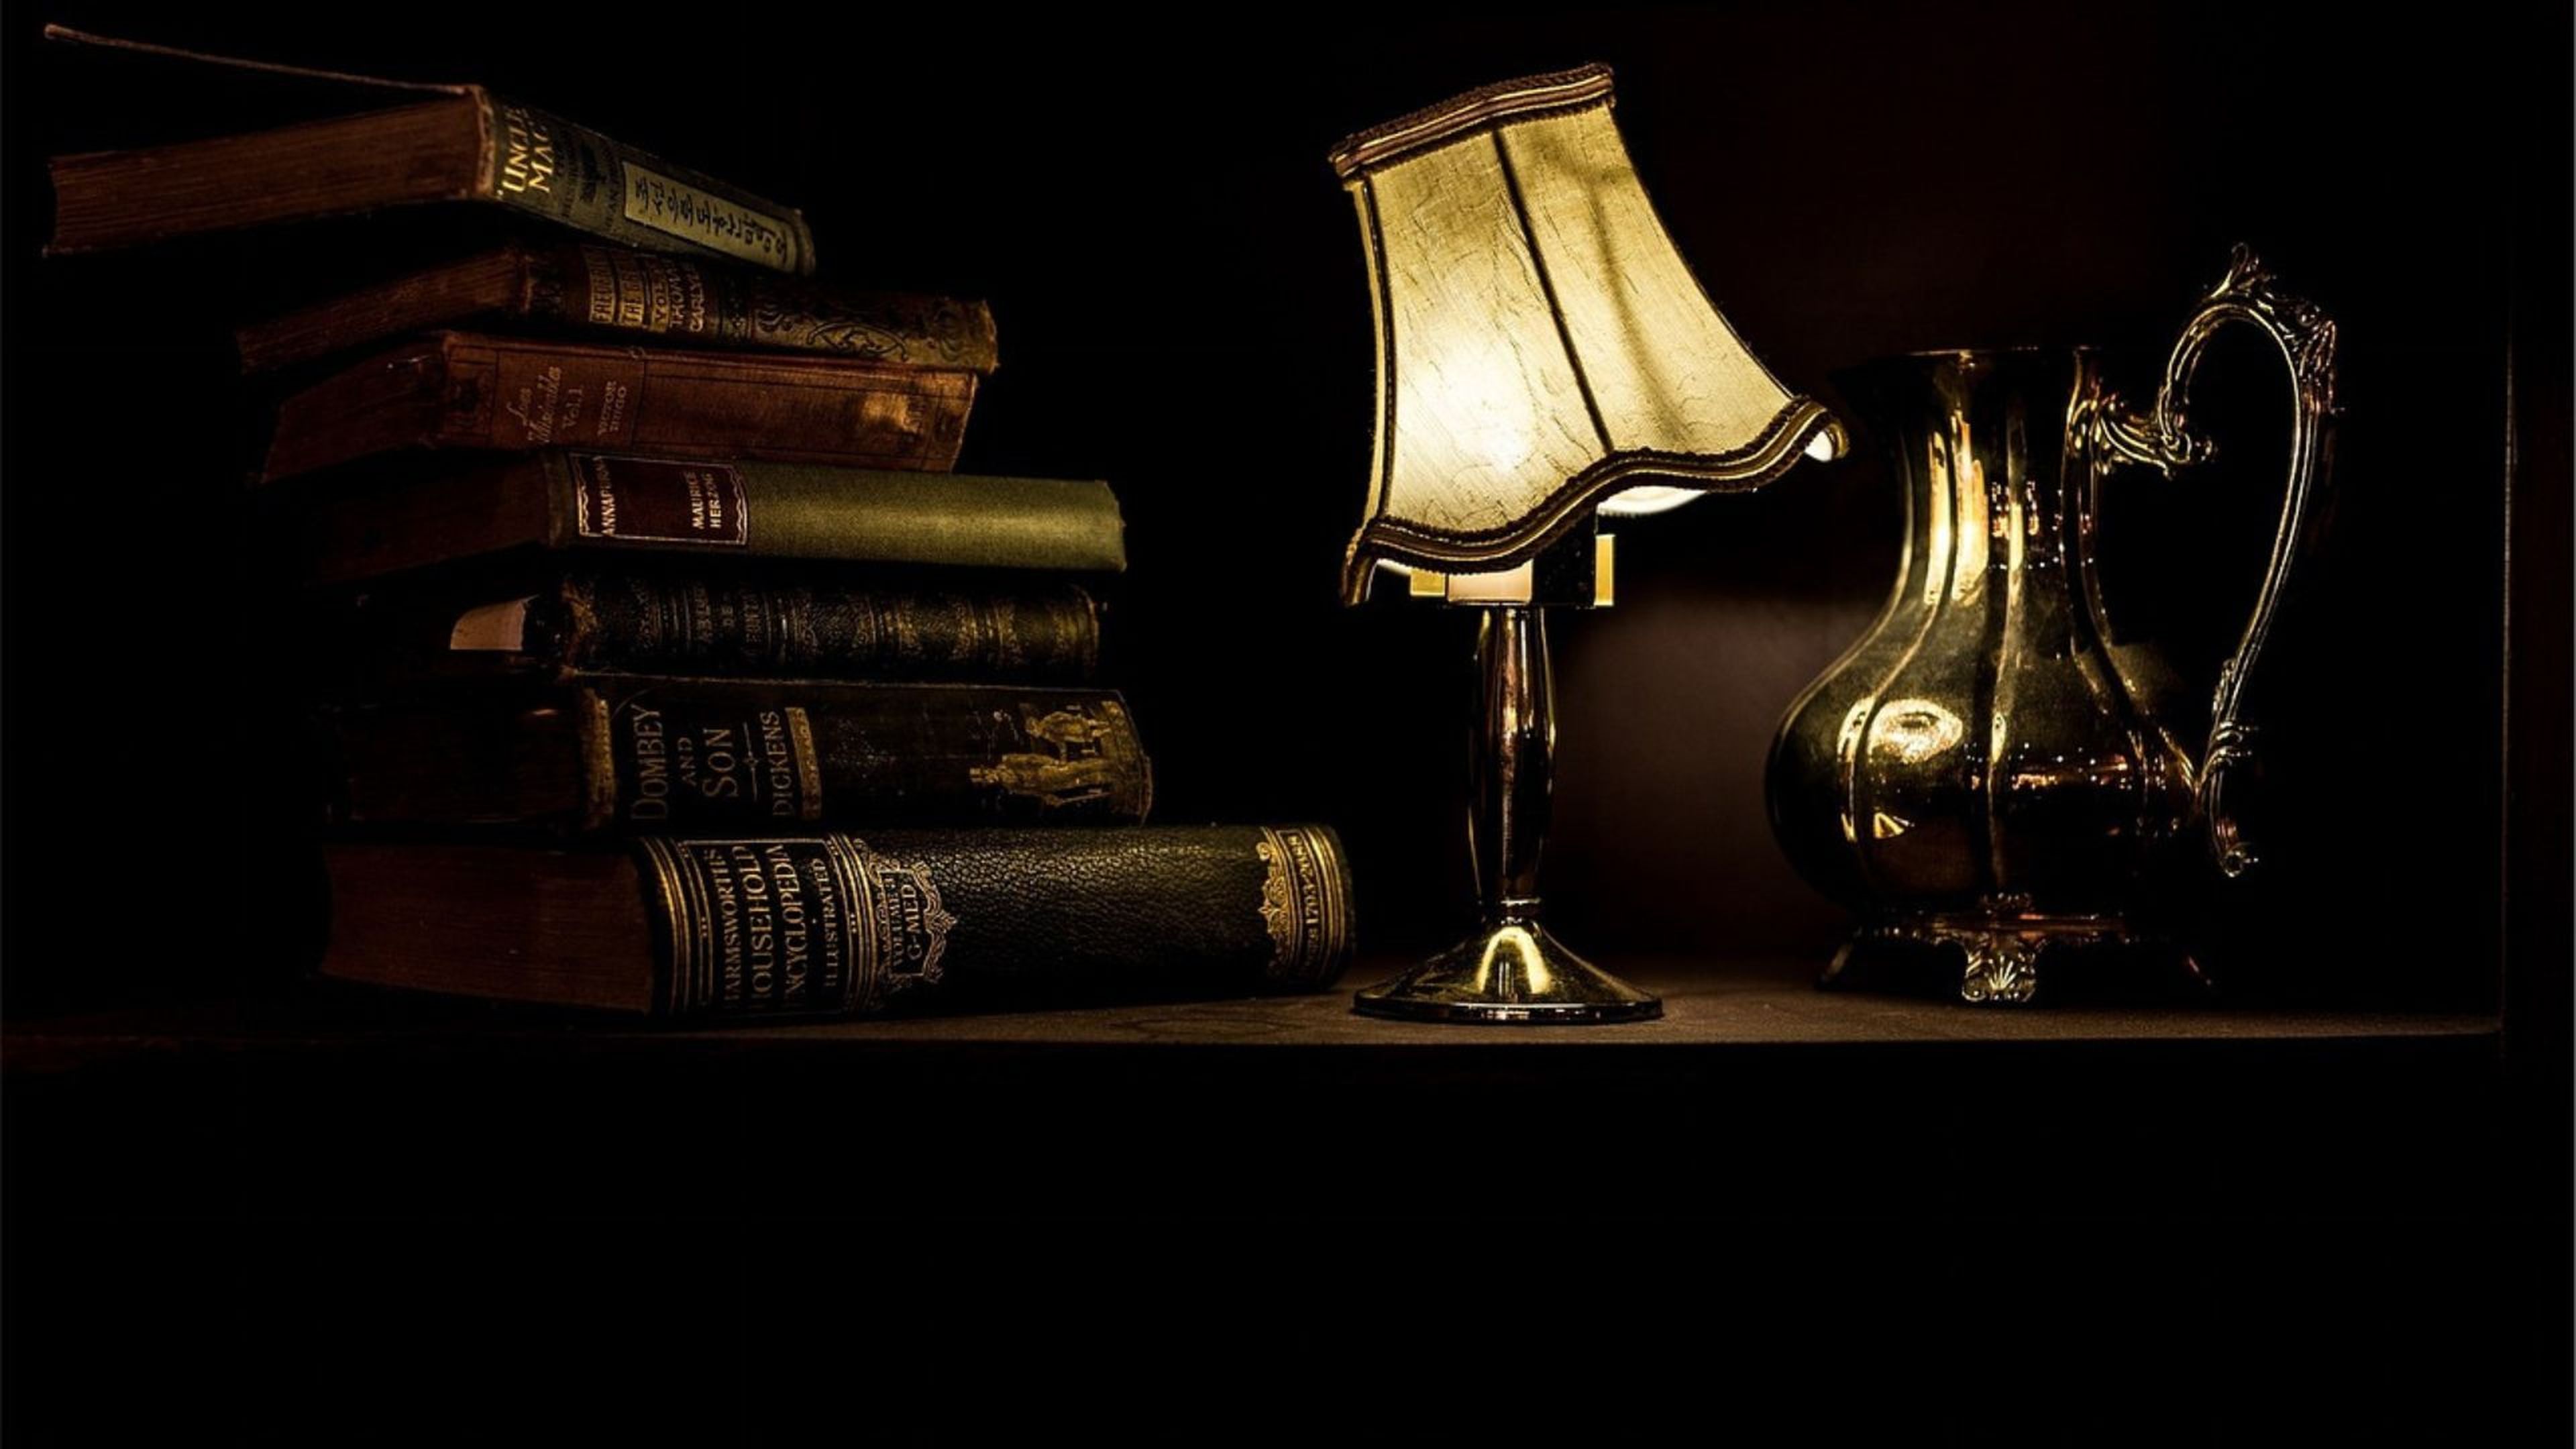 Un escritorio antiguo con una lámpara, una jarra y varios libros.